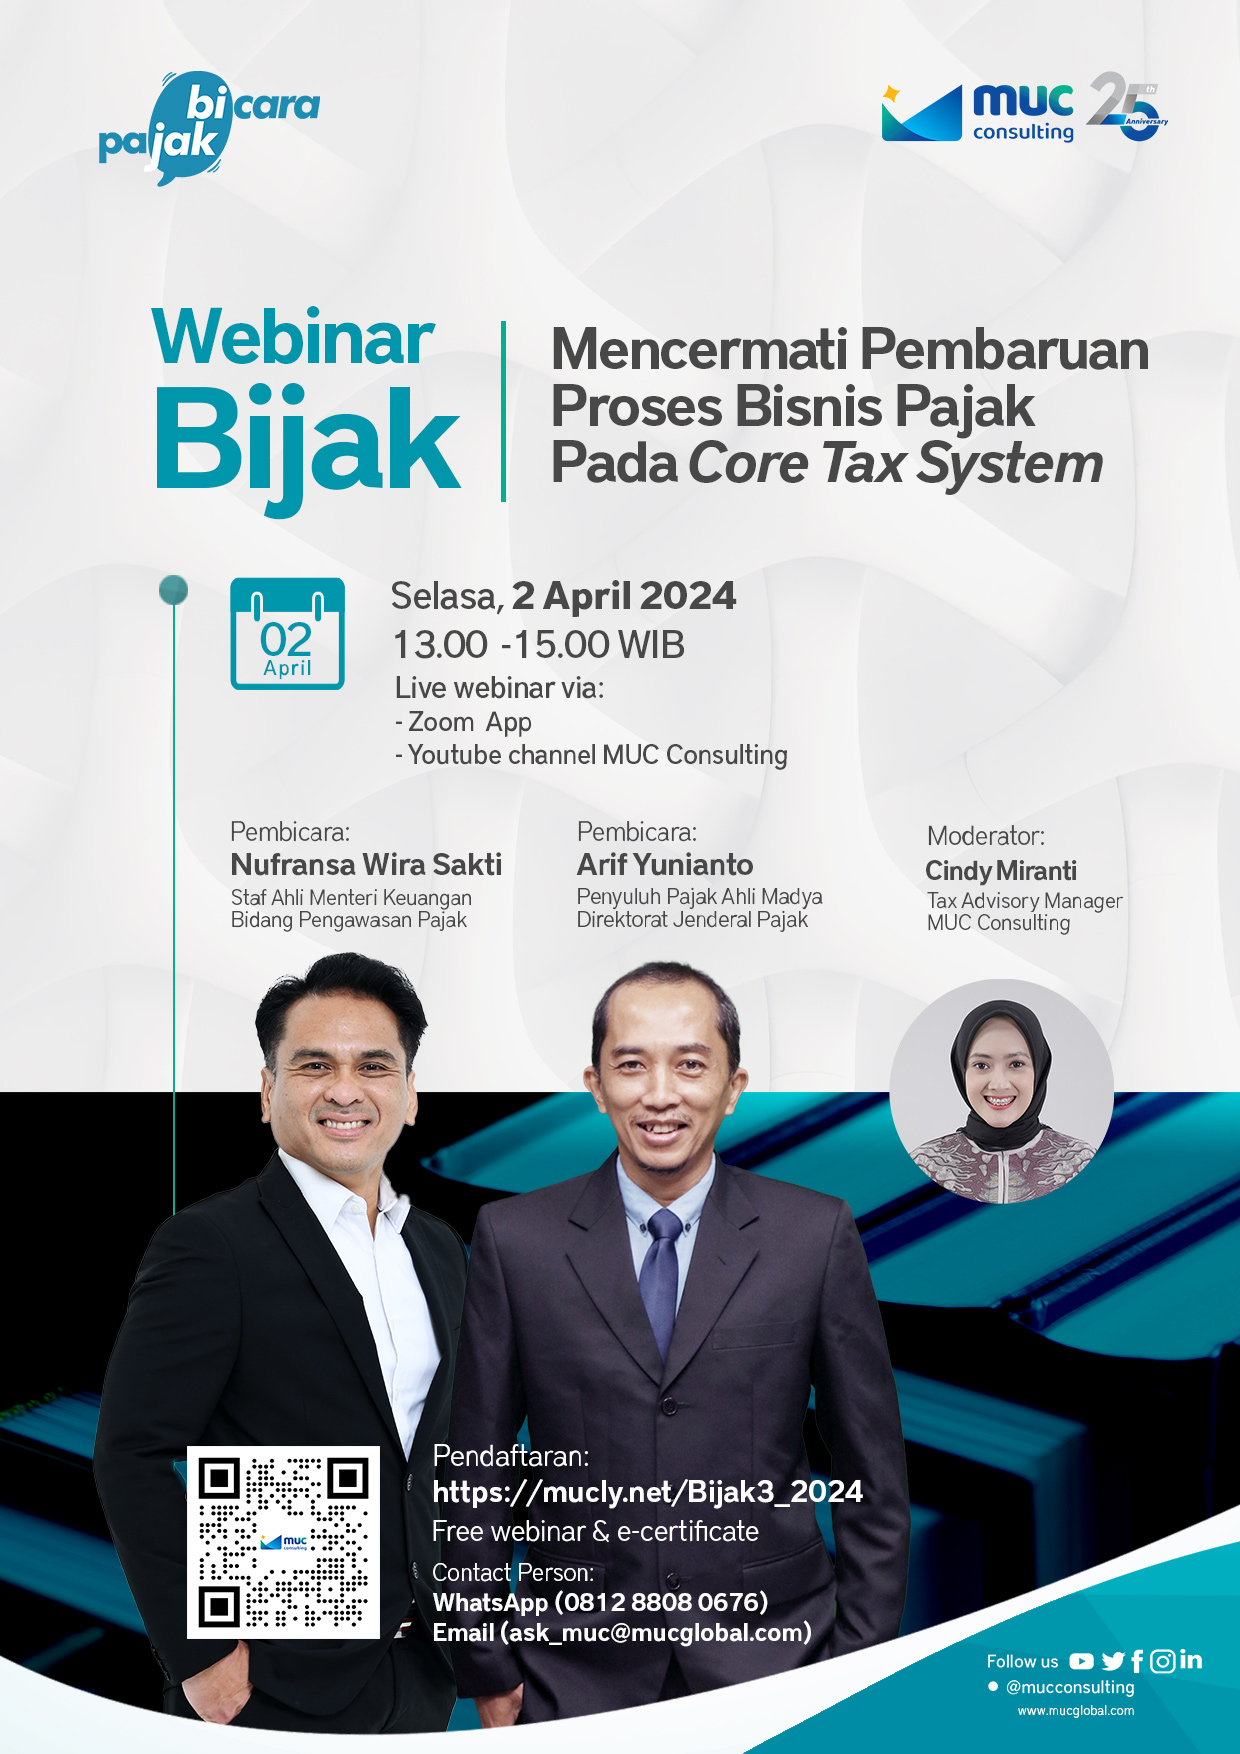 Mencermati Pembaruan Proses Bisnis Pajak Pada Core Tax System